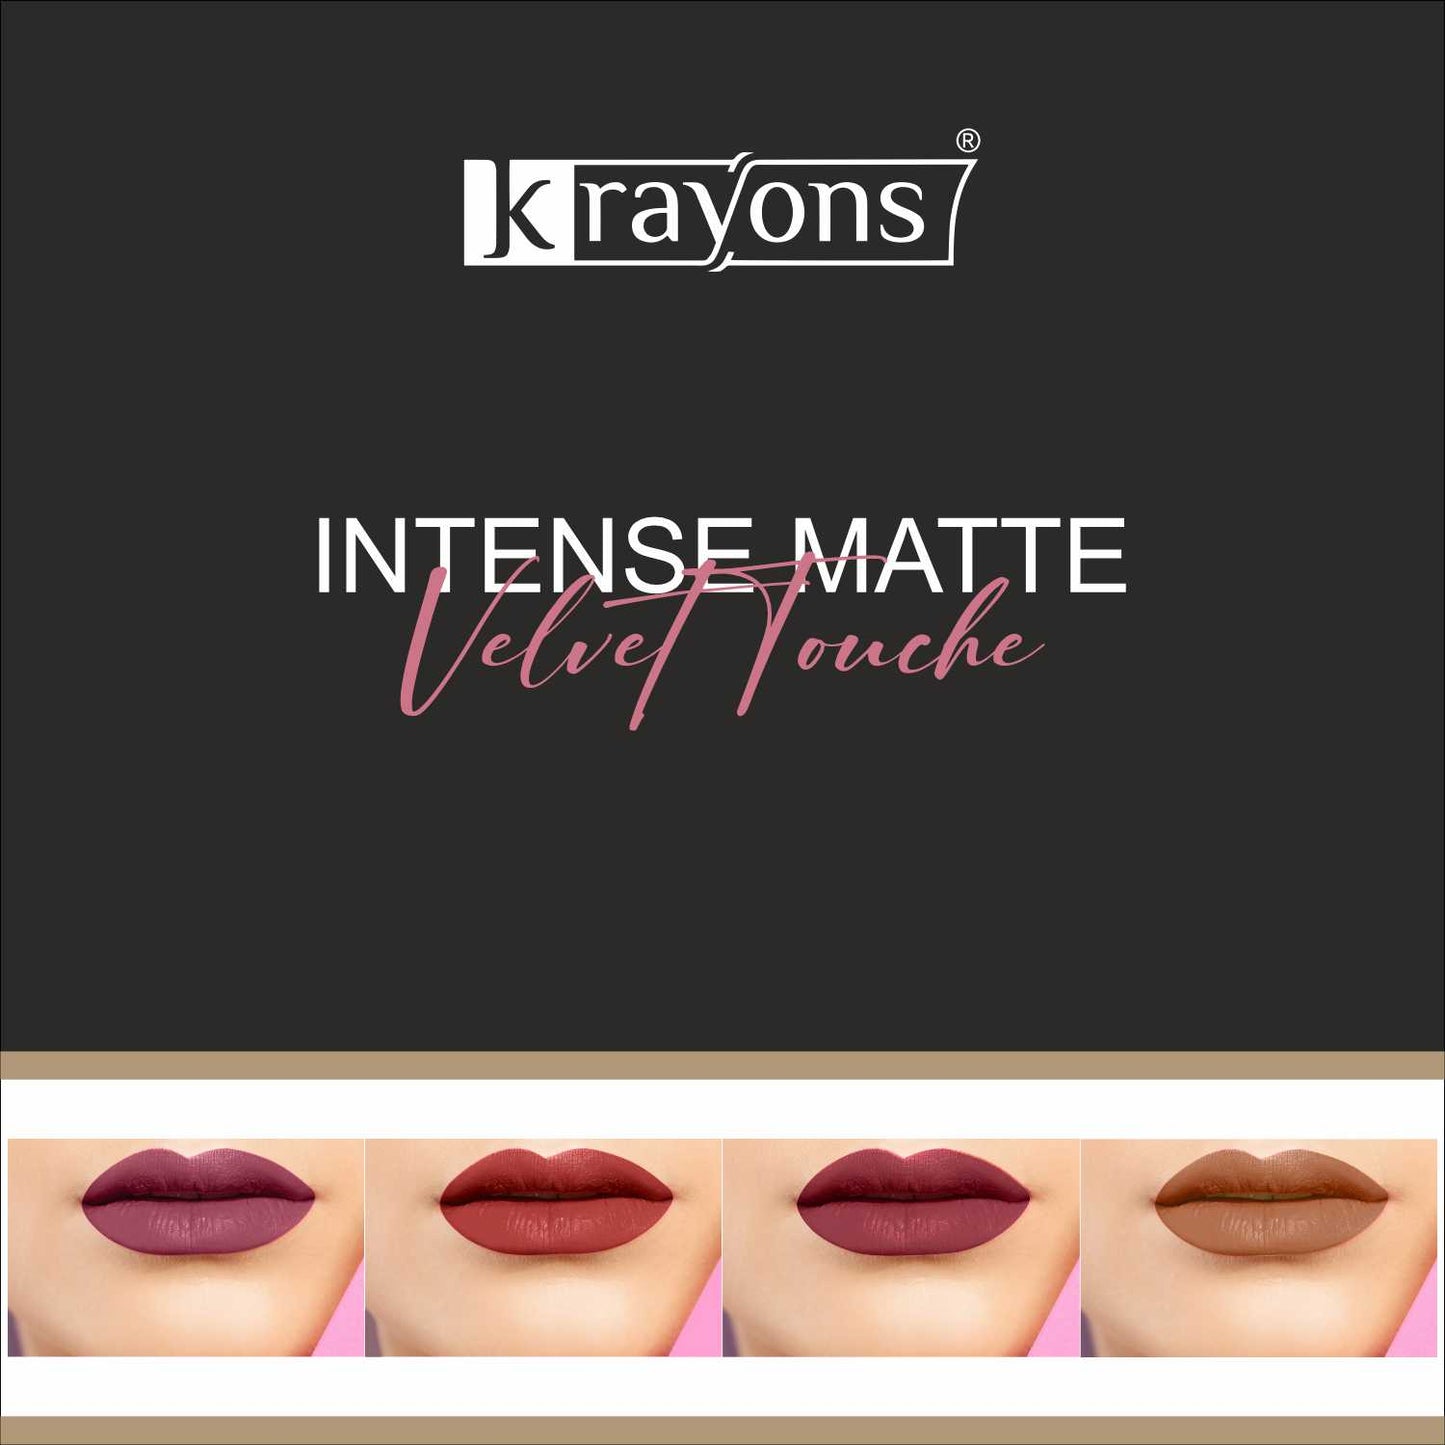 Krayons Intense Matte Lipstick, Waterproof, Longlasting, Rose Red, Scarlet Red, Cherry Maroon, Nude Beige, 3.5gm Each (Pack of 4)